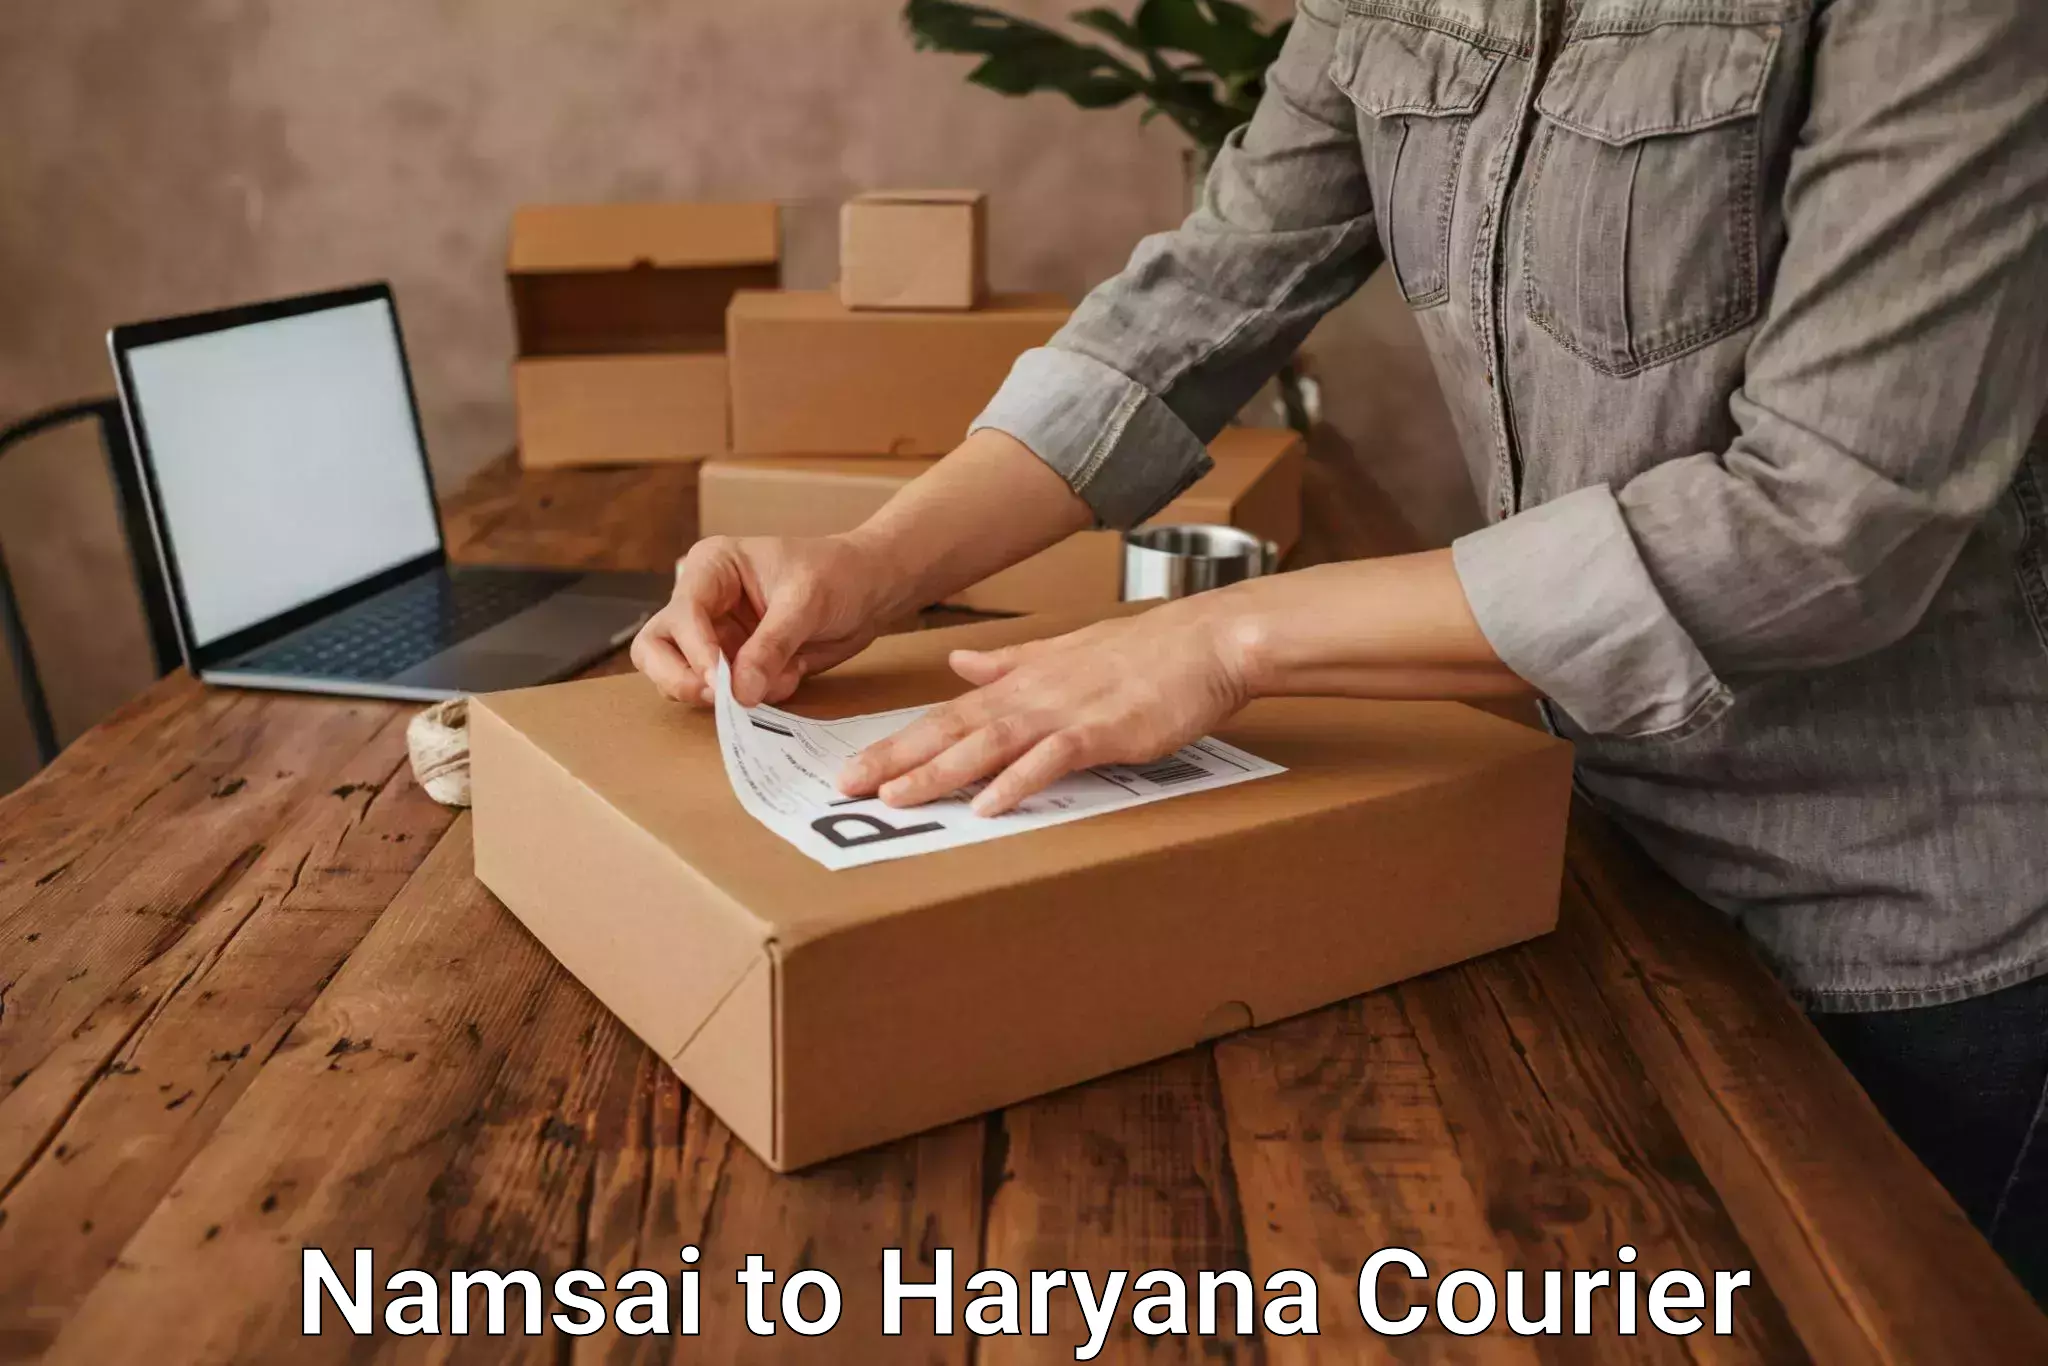 Courier app Namsai to Haryana